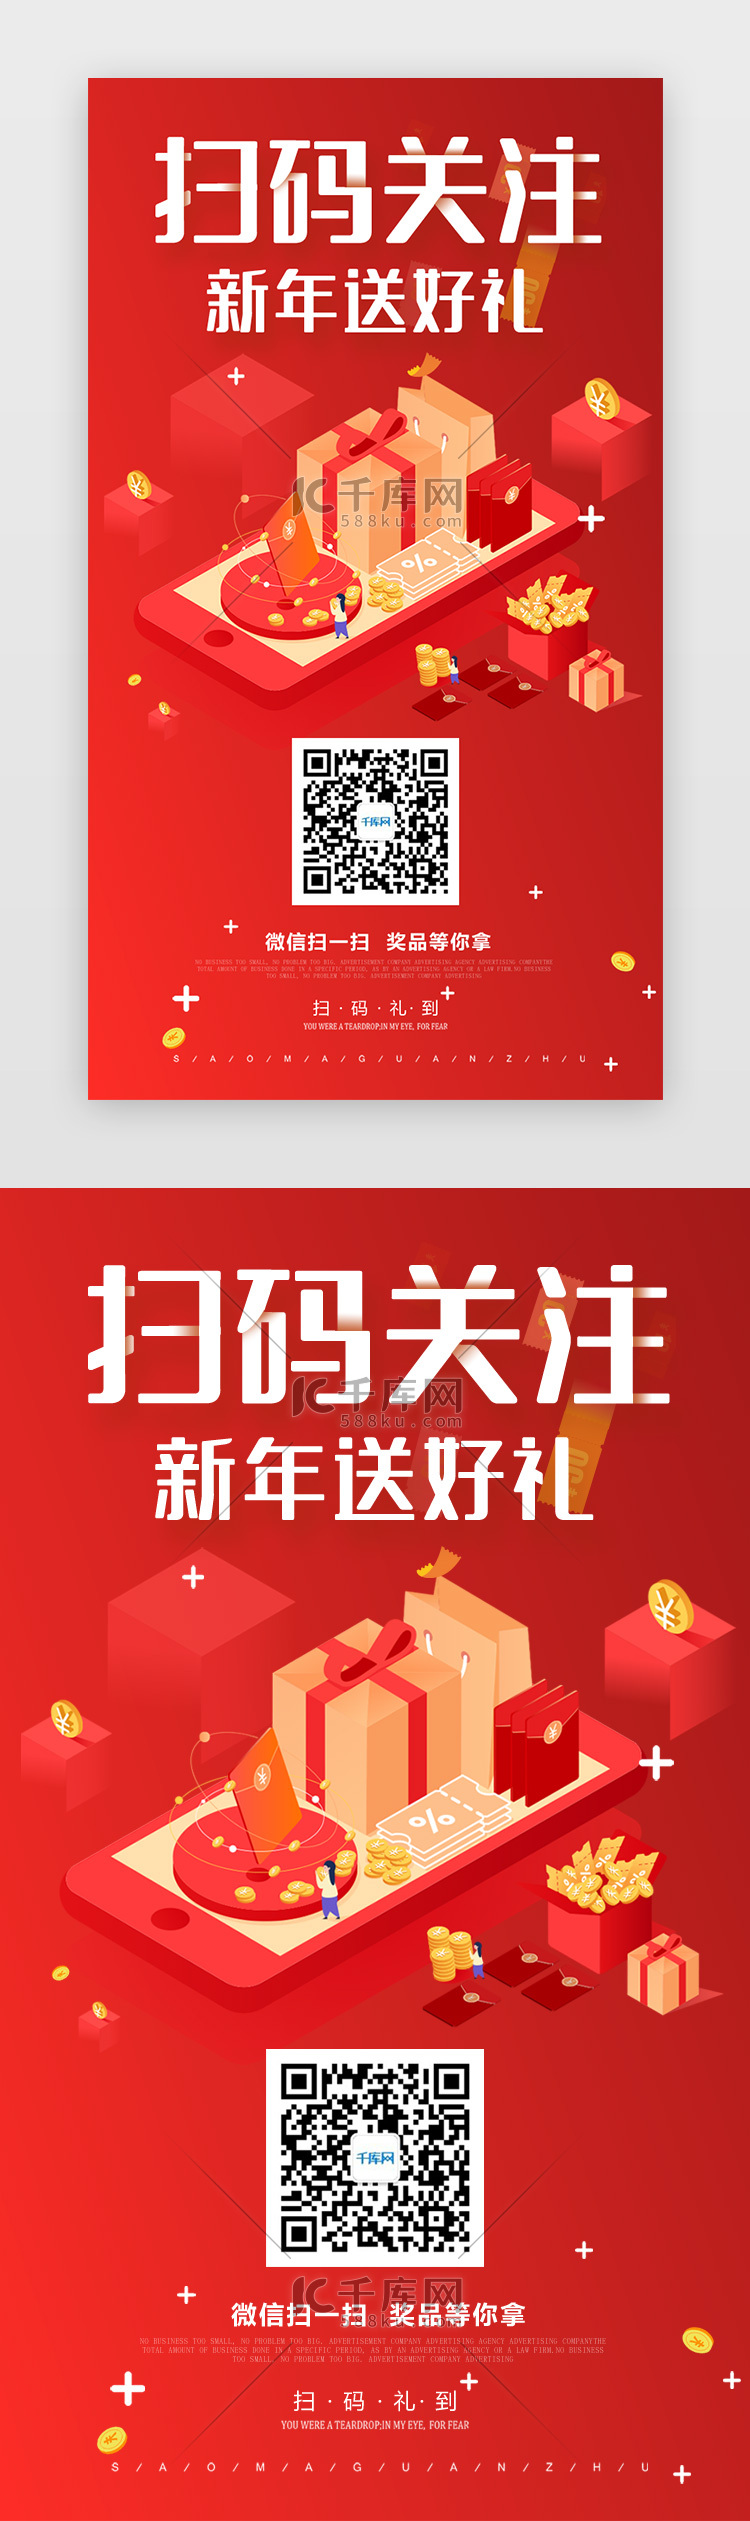 扫码新年送好礼APP宣传中国风红色扫码